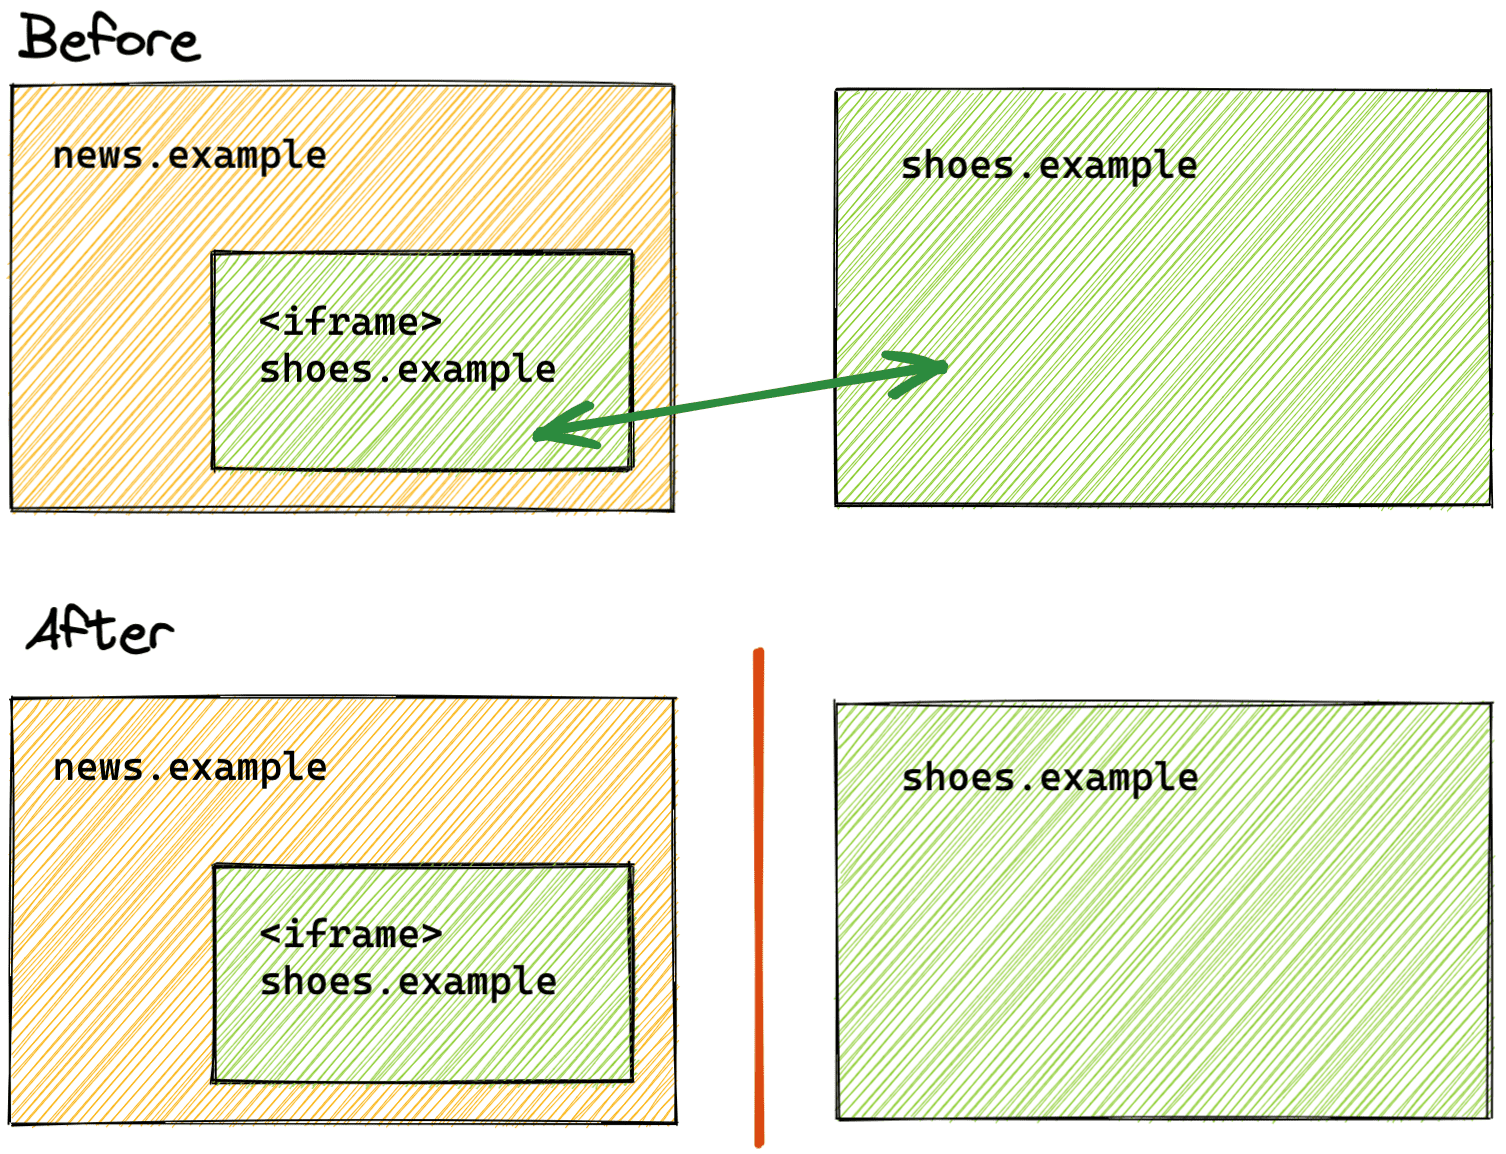 Una comparación del estado anterior y posterior de la partición de almacenamiento.